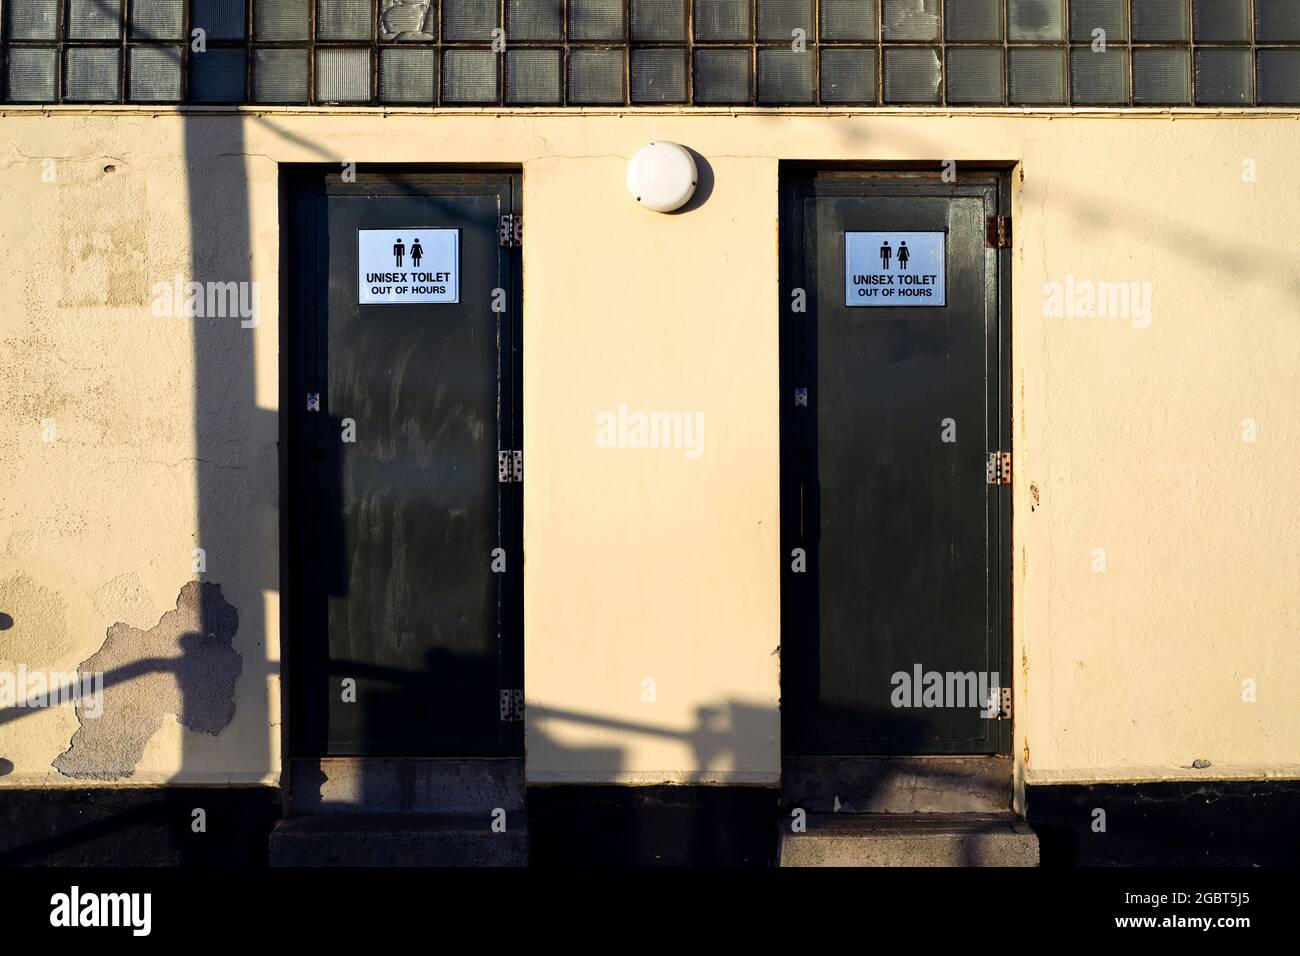 Toilettes unisex dans la ville balnéaire. Signes sur la porte avec une inscription Unisex toilettes hors des heures. Banque D'Images